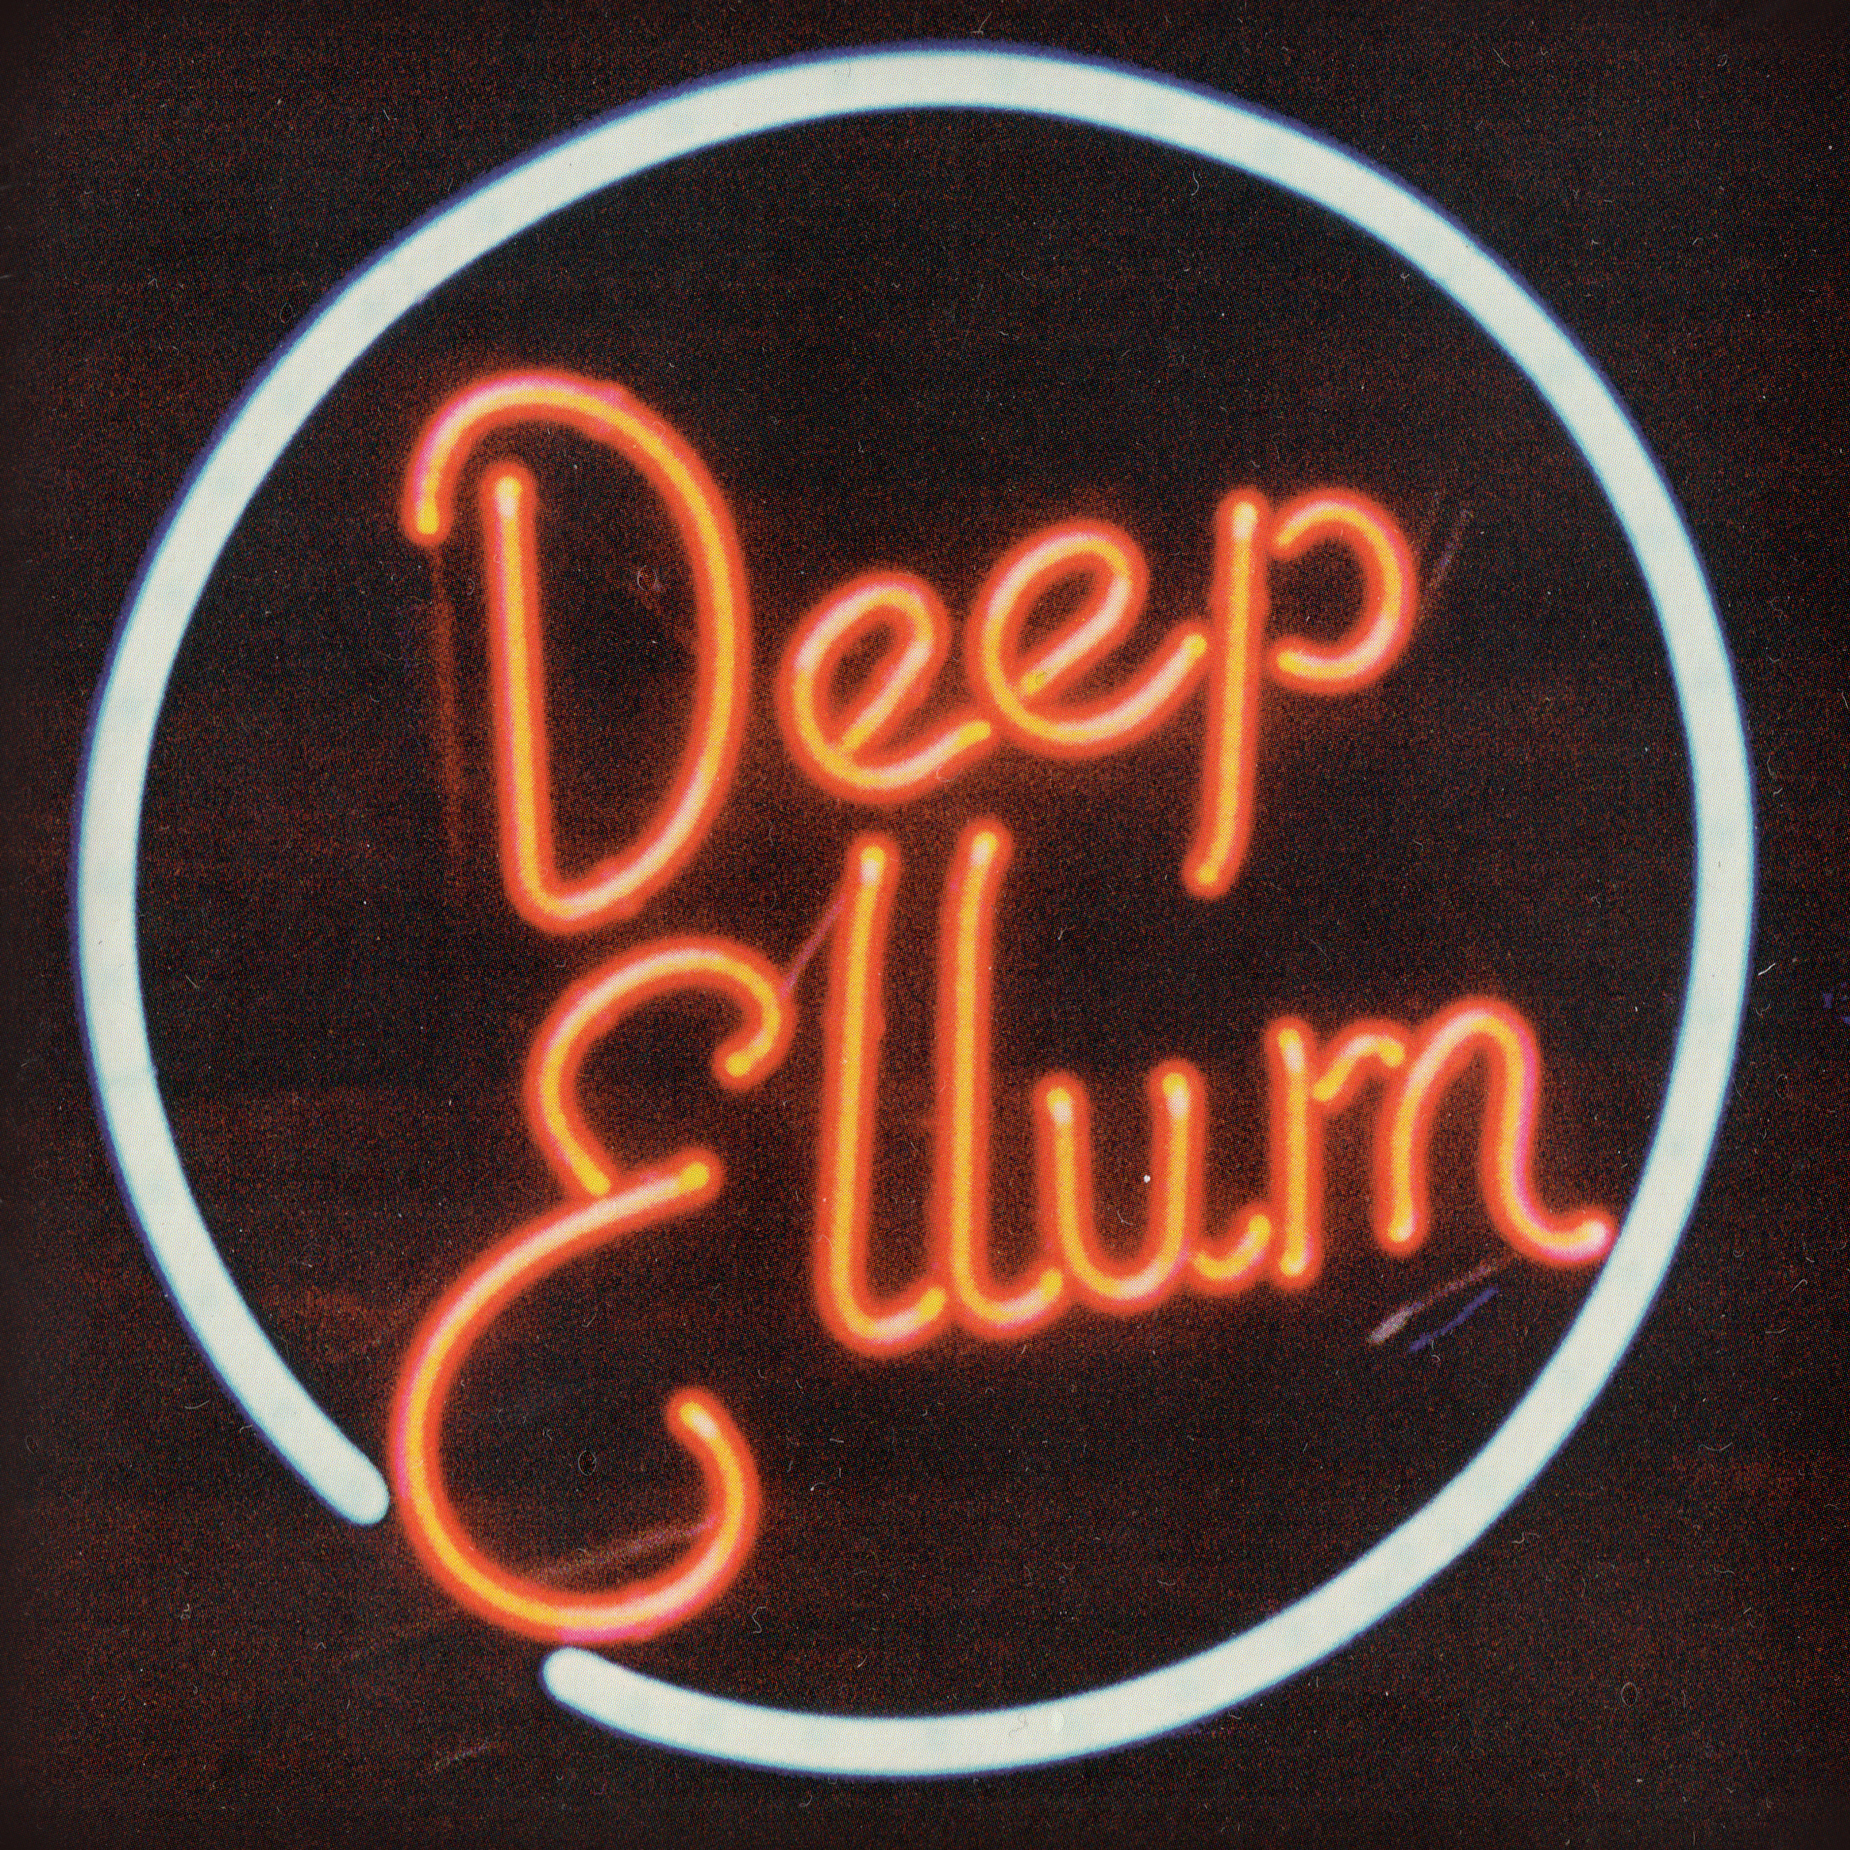 "Welcome to Deep Ellum" by Deep Ellum